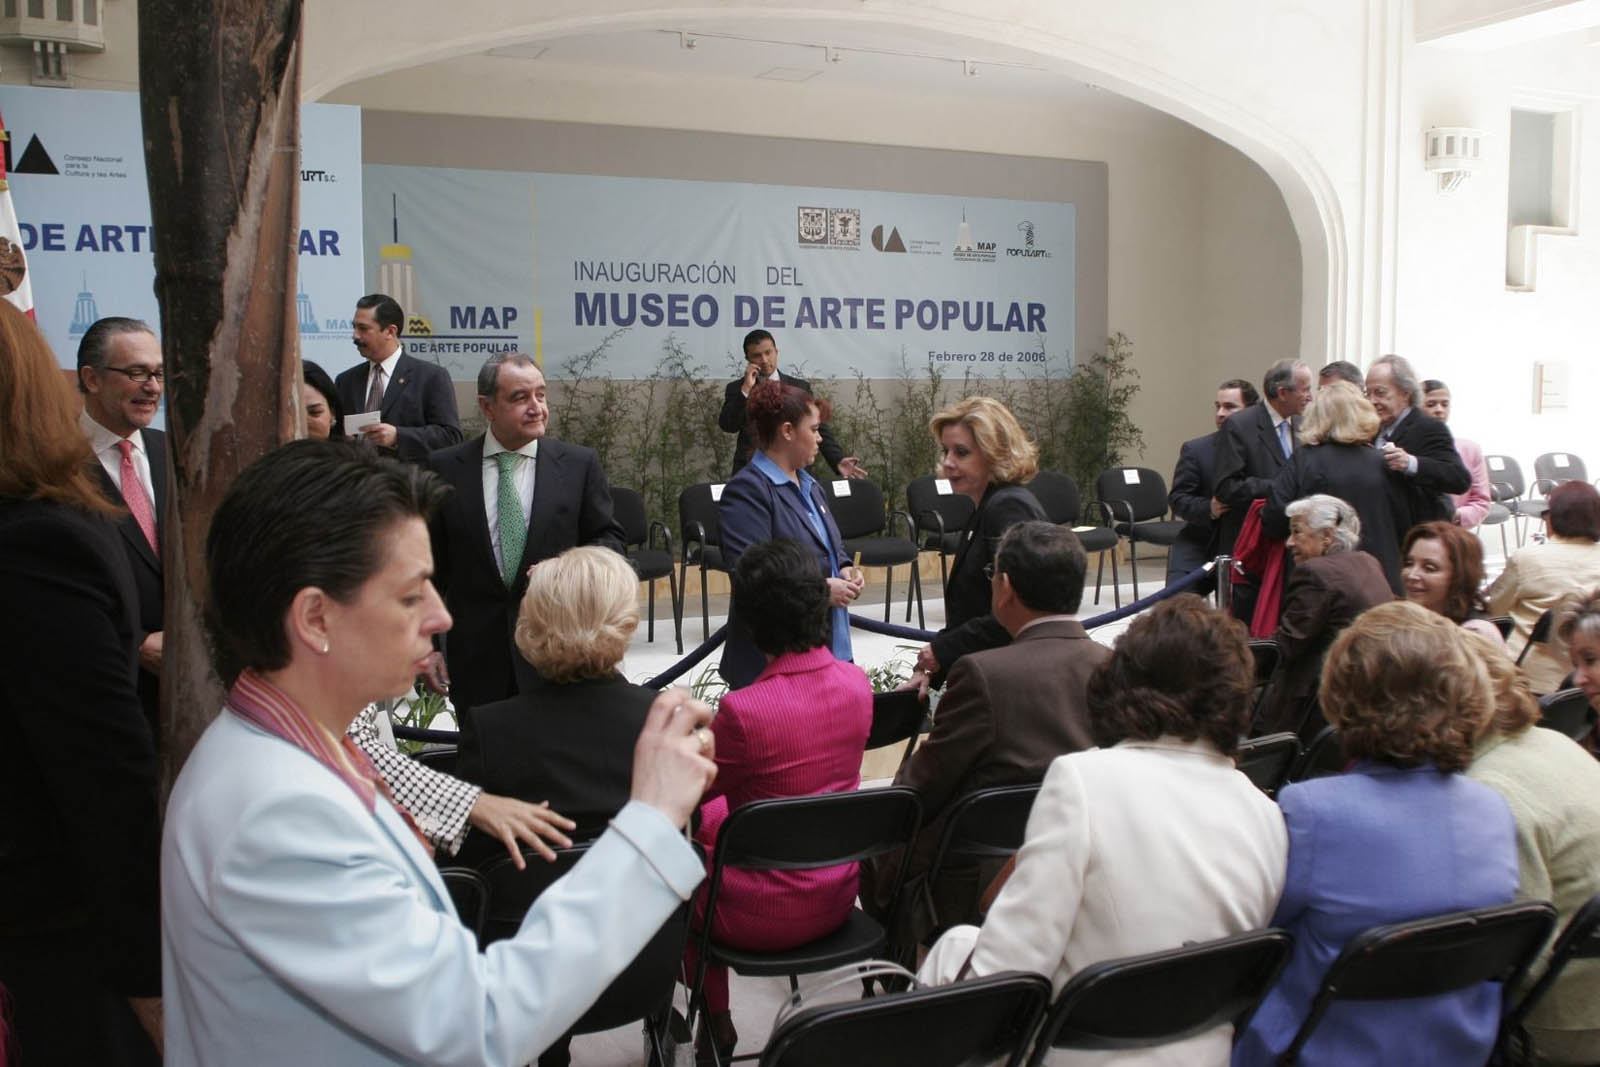 AmigosMAP en inauguración del Museo de Arte Popular. (Foto: AmigosMAP).